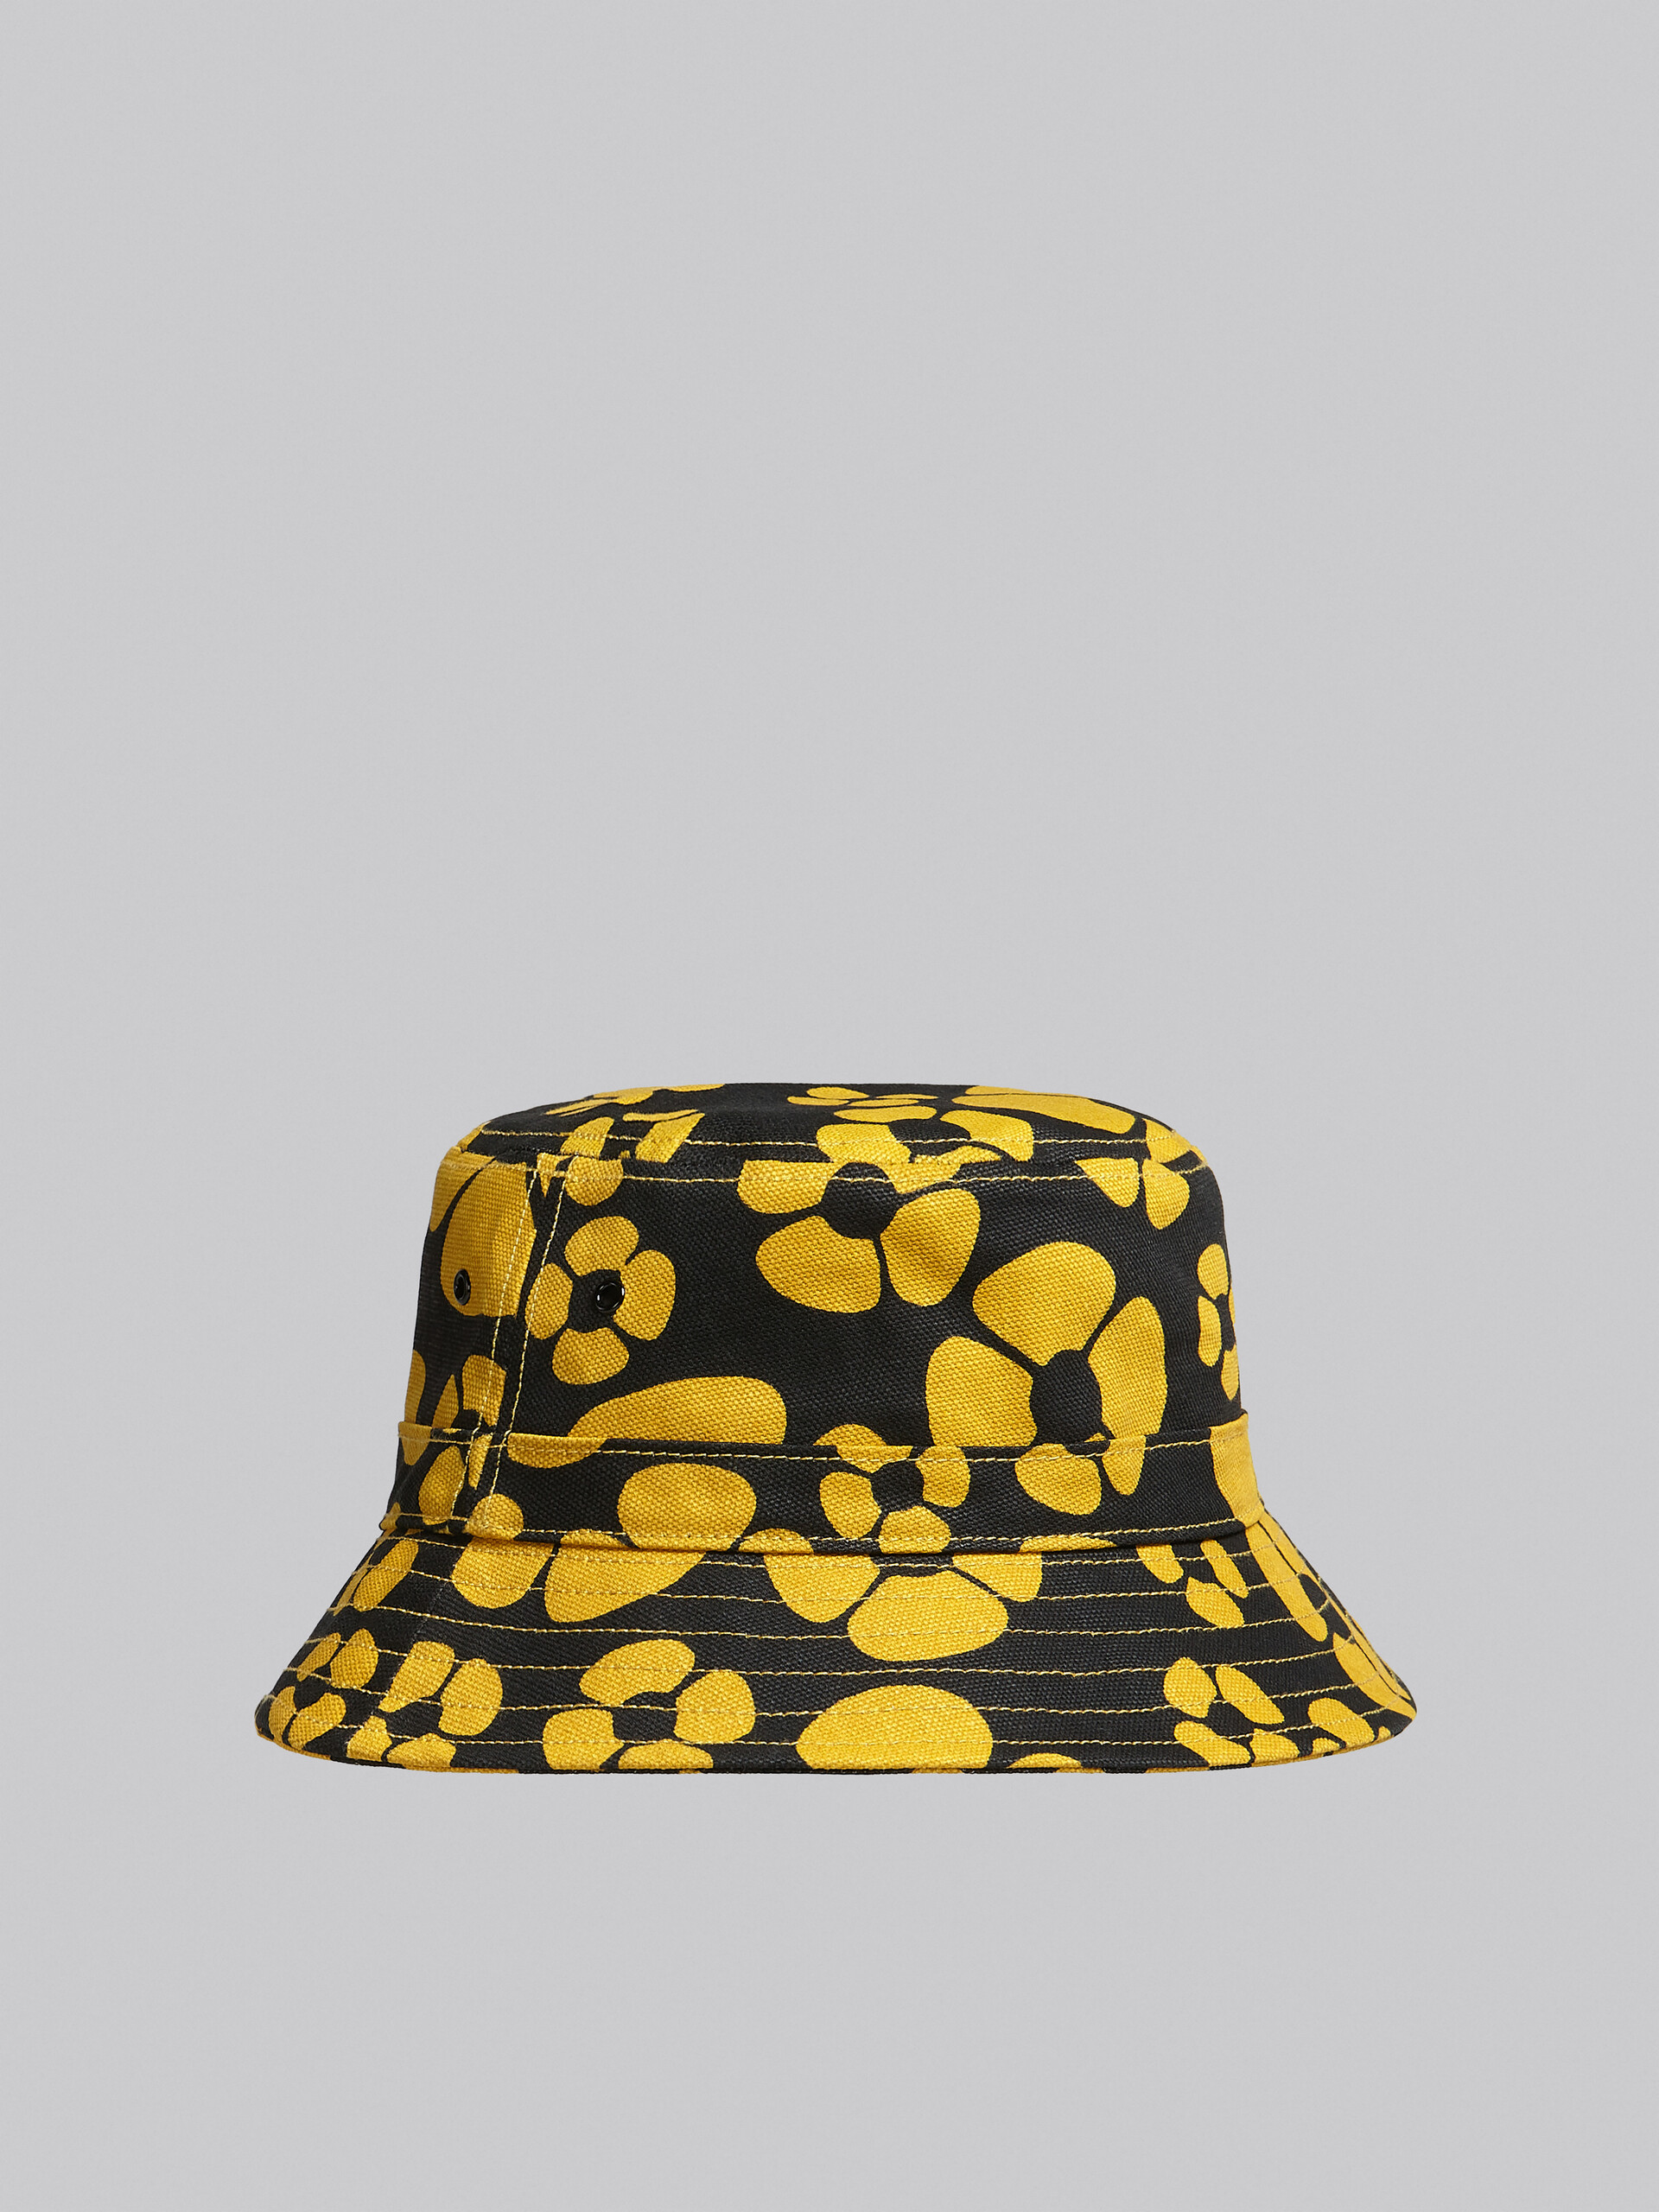 MARNI x CARHARTT WIP - yellow bucket hat - Hats - Image 3